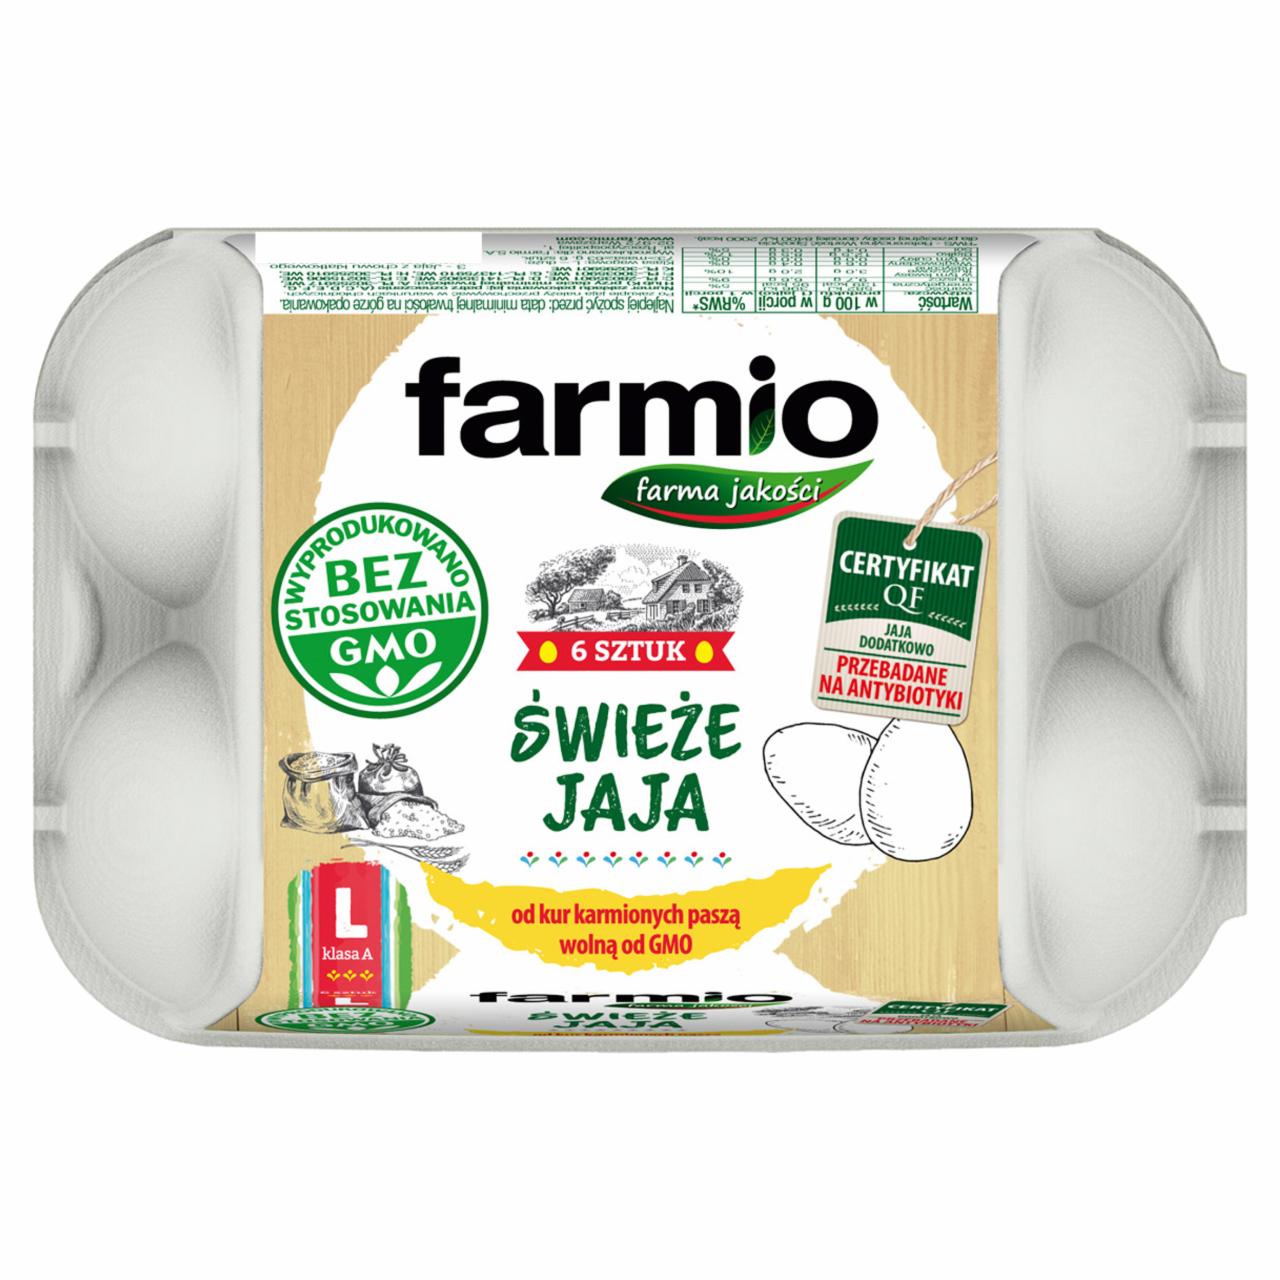 Zdjęcia - Farmio Świeże jaja od kur karmionych paszą wolną od GMO L 6 sztuk